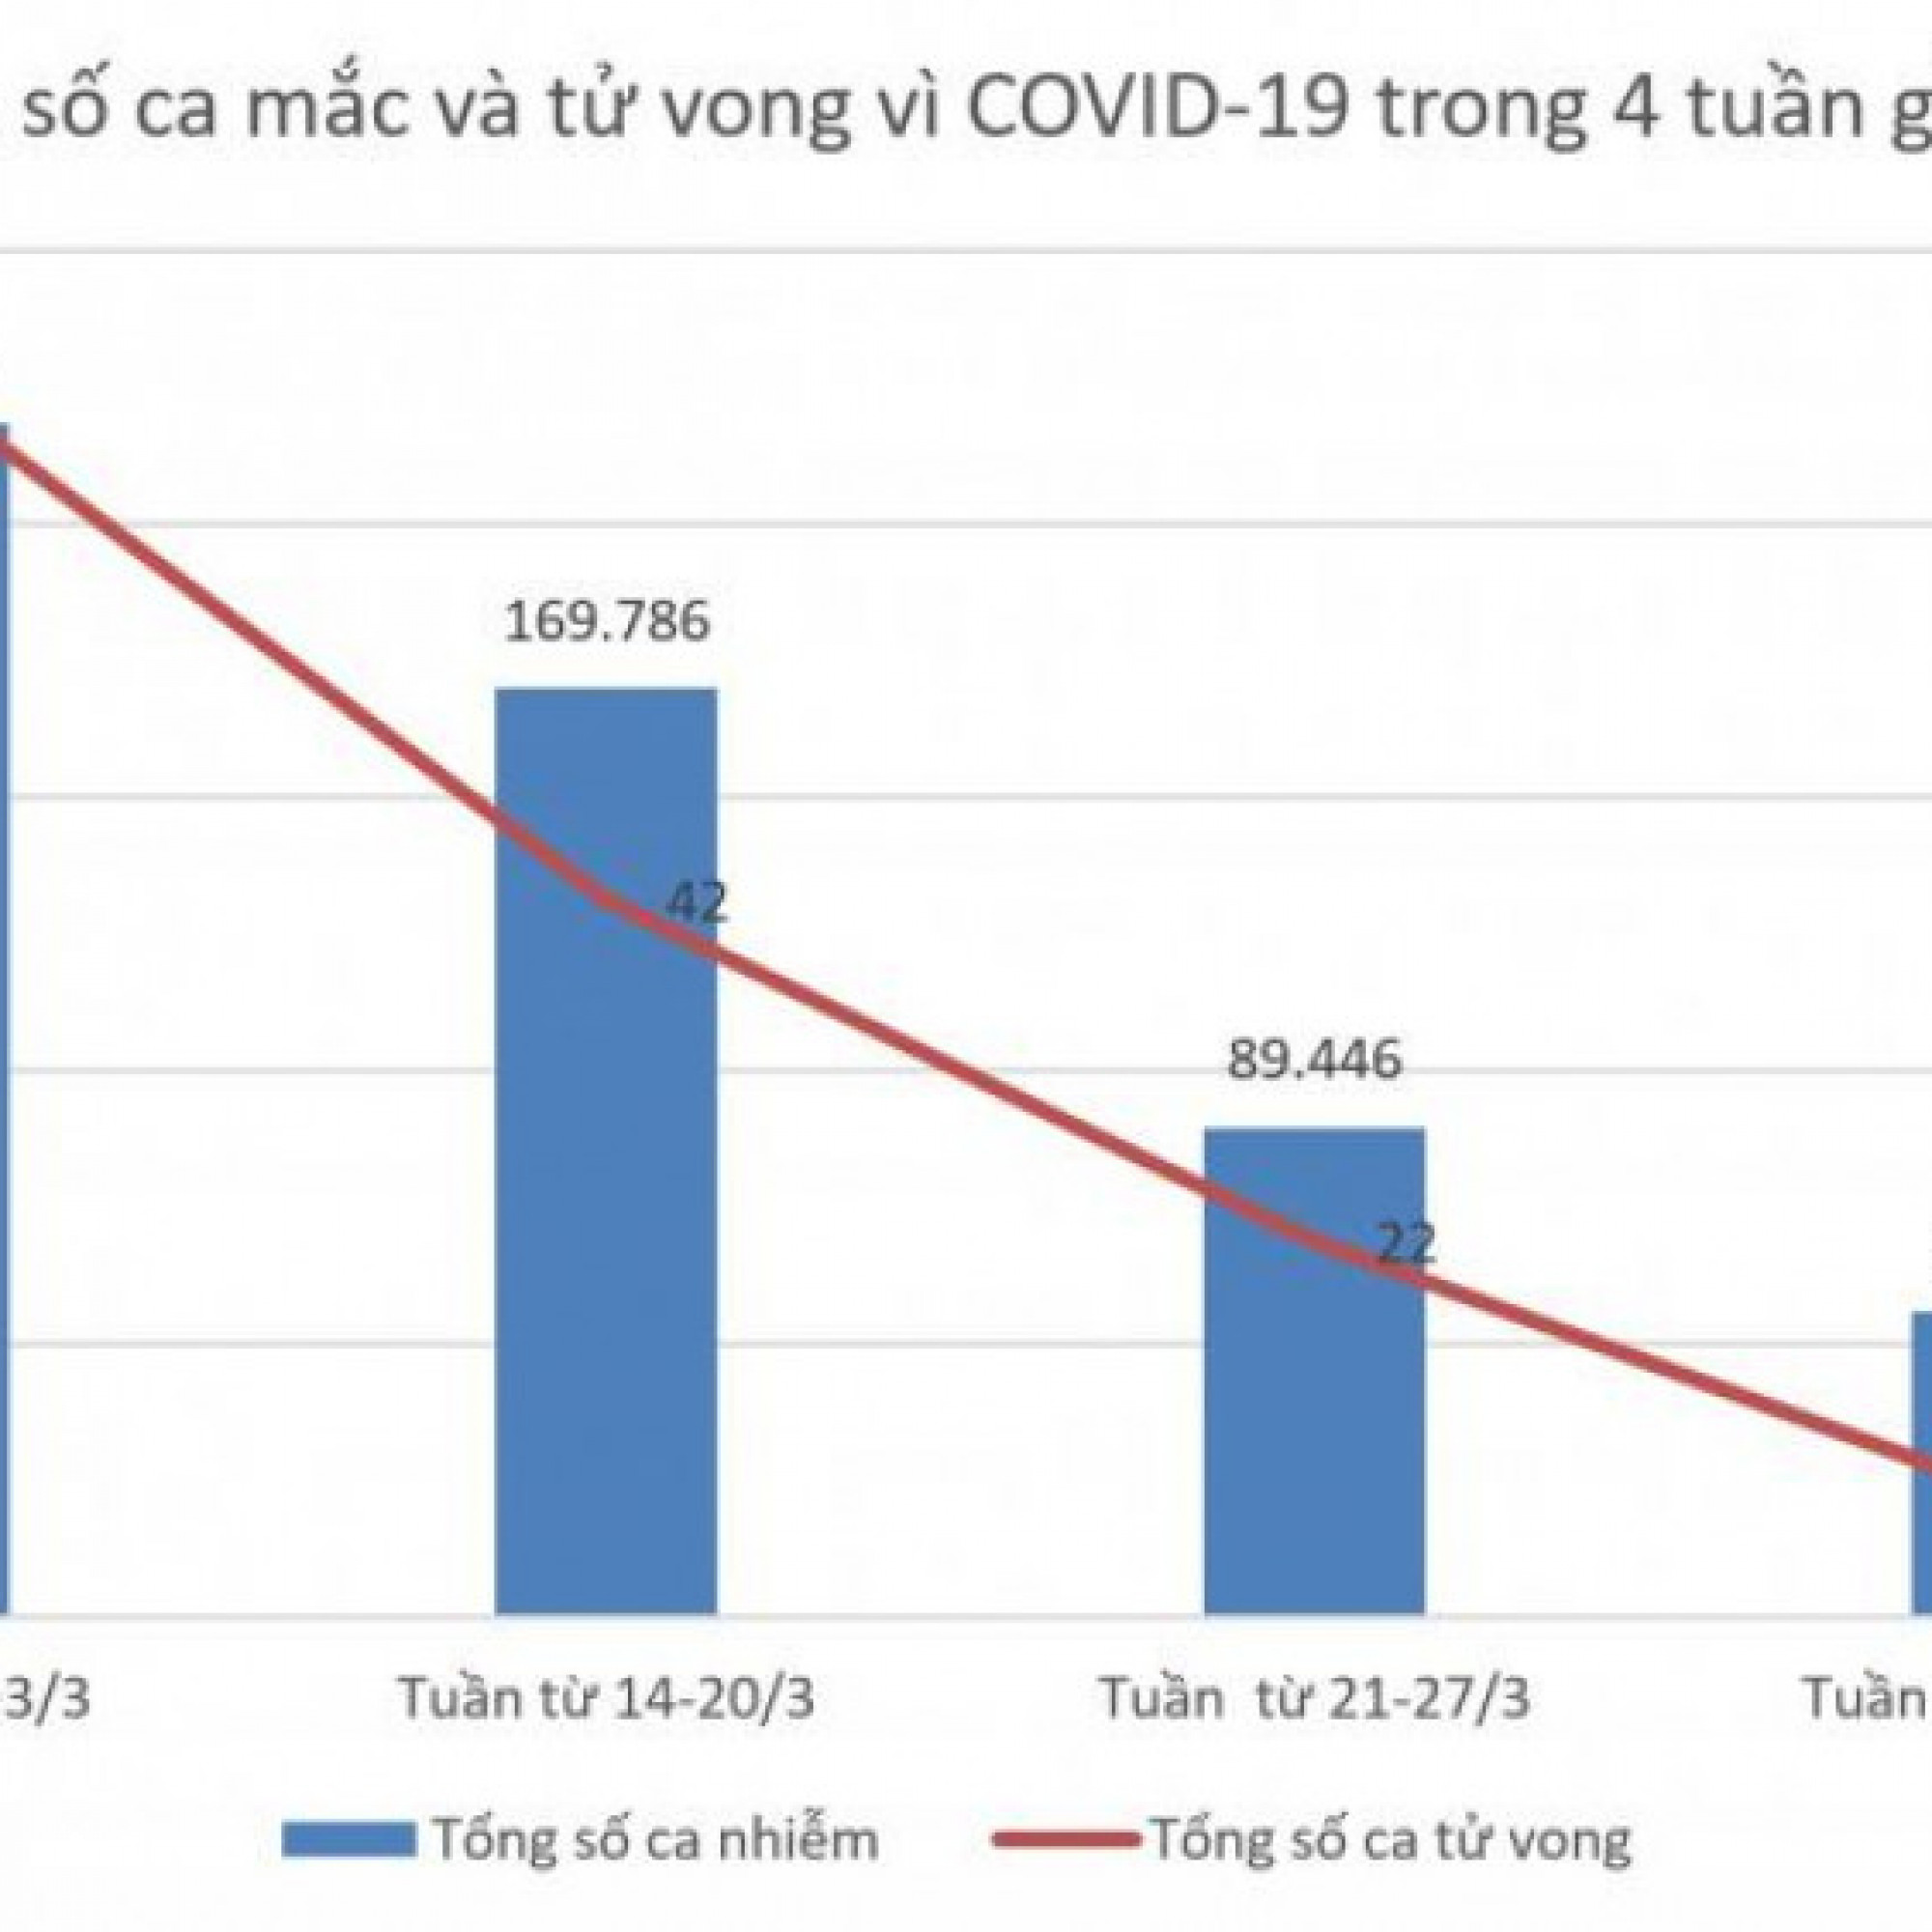 Chuyển động - Tình hình dịch COVID-19 tại Hà Nội 7 ngày qua (từ 28/3-3/4)